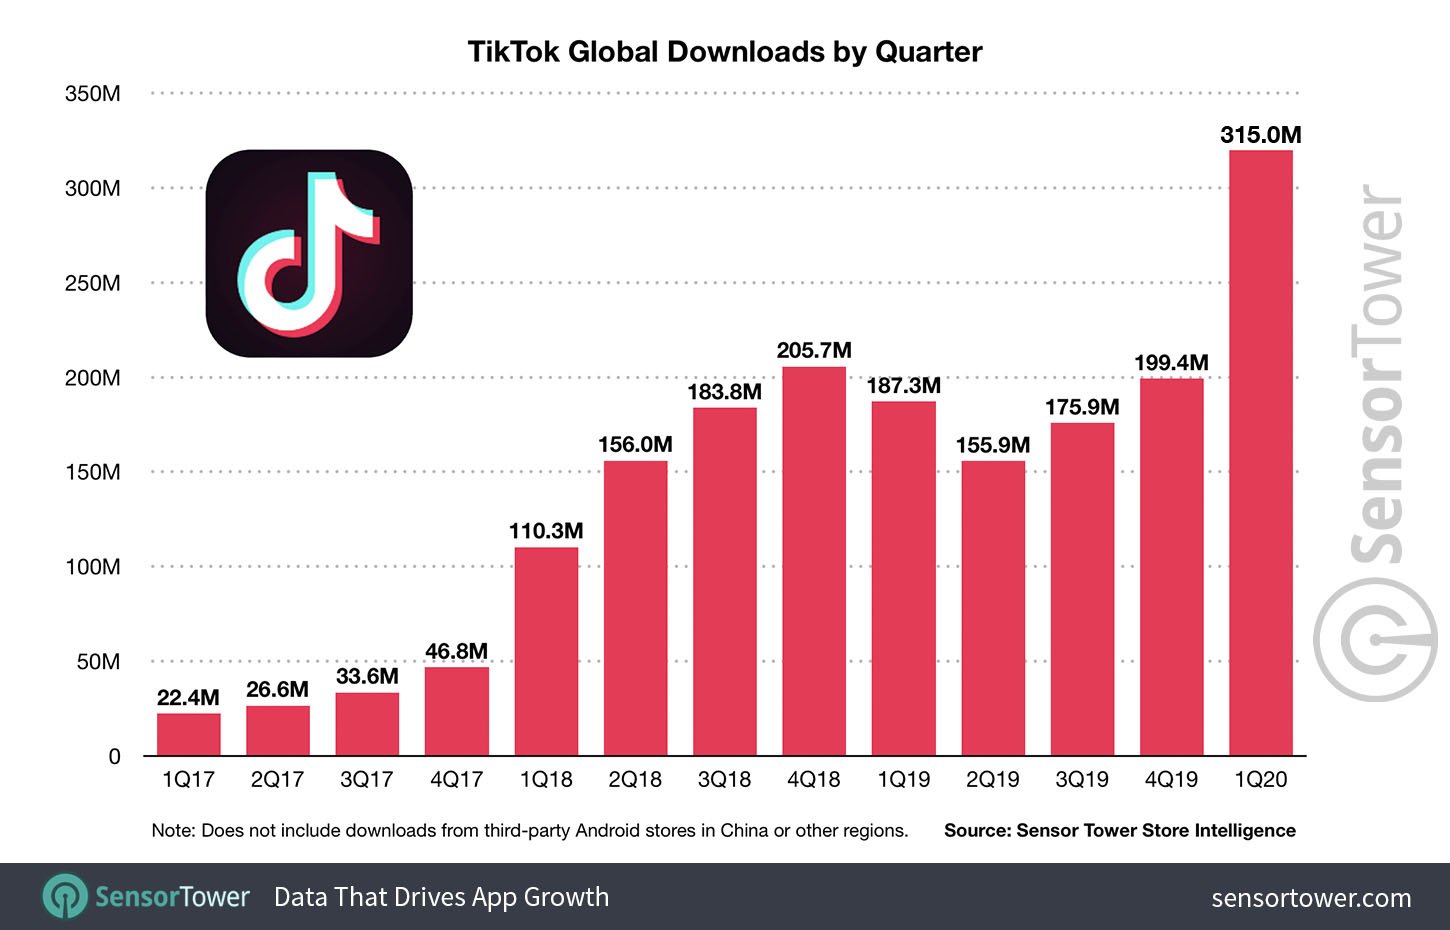 Dados mostram quantidade de downloads do TikTok por trimestre desde 2017.